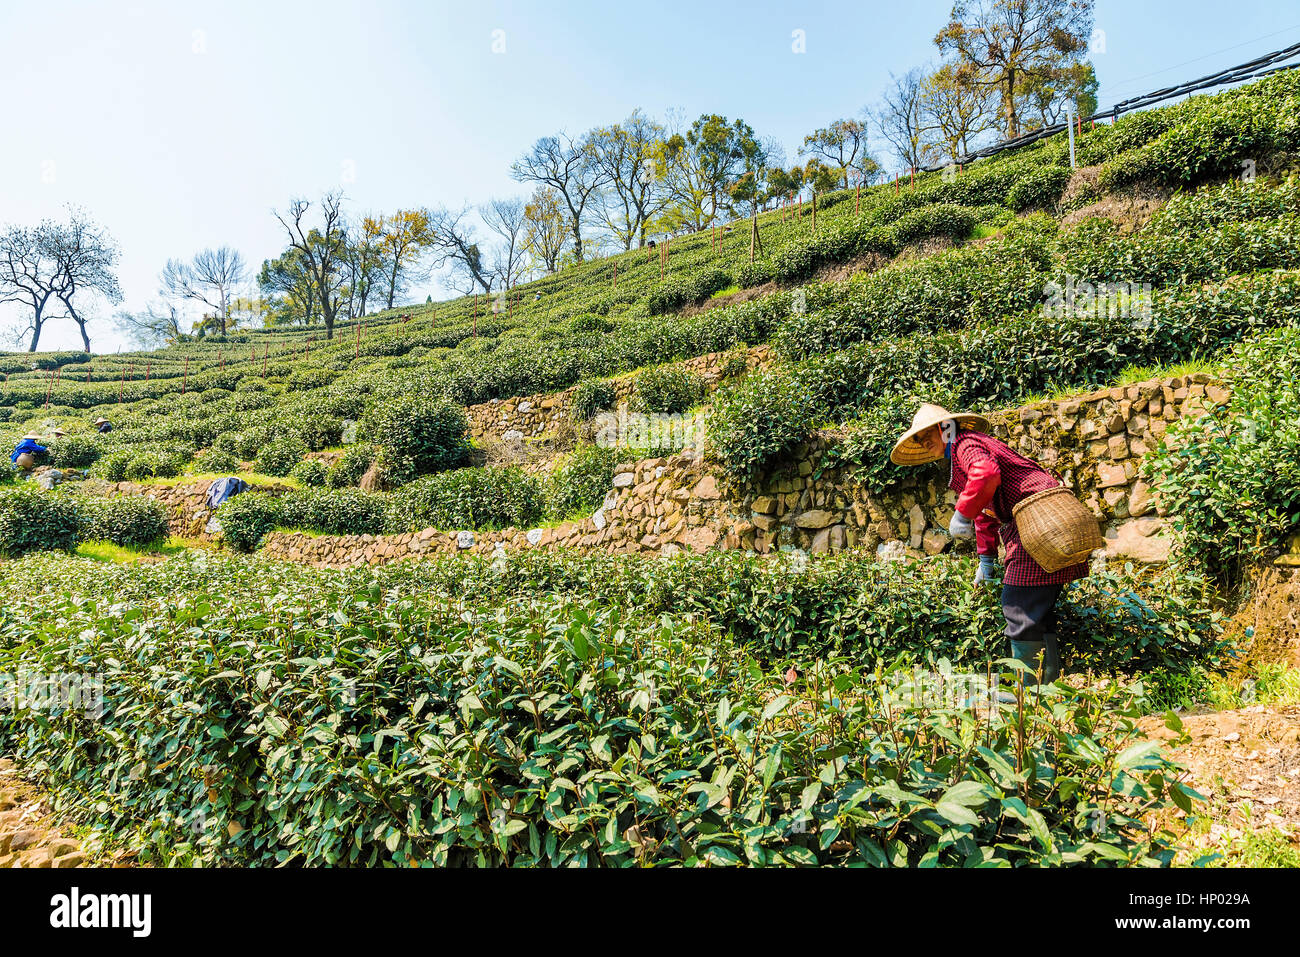 HANGZHOU, Cina - 25 marzo: Un vecchio contadino cinese è raccolta le foglie di tè in tè Longjing campi uno dei più famosi tè di fattorie in Cina il 25 marzo Foto Stock